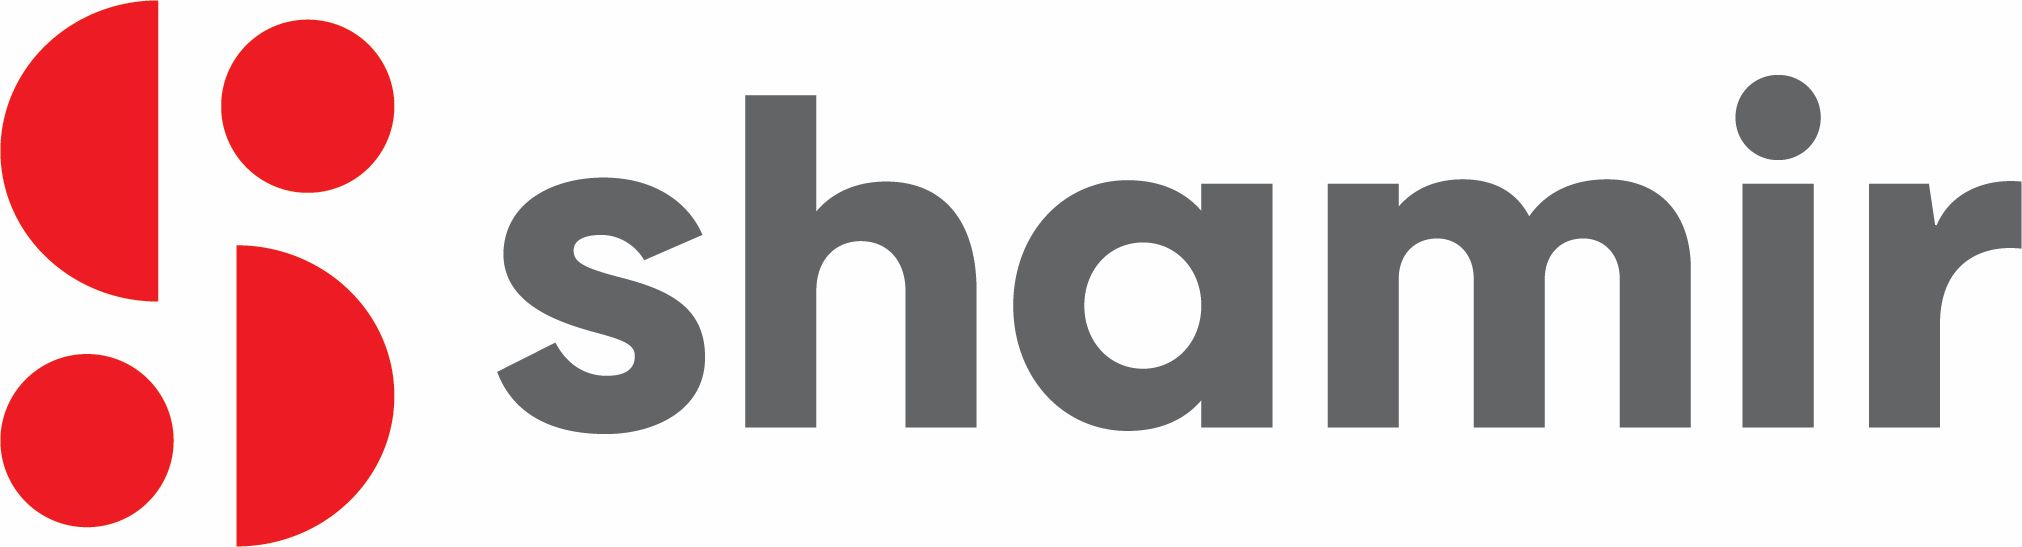 Shamir Logo